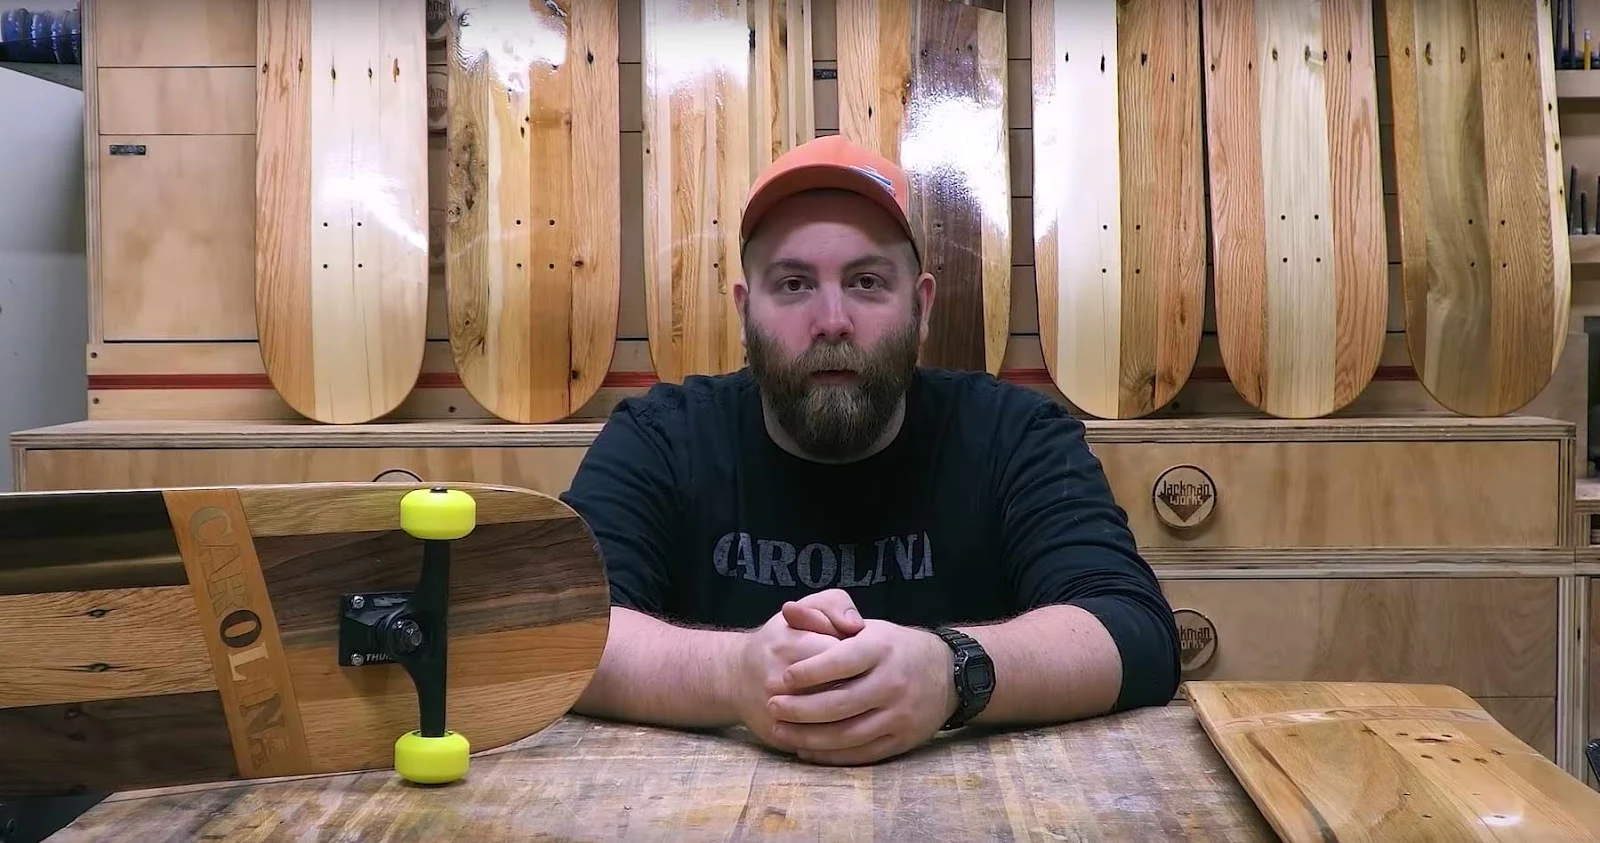 Skateboard Decks aus Palettenholzfurnier hergestellt. Paul Jackman zeigt wie er es macht in einem Video.